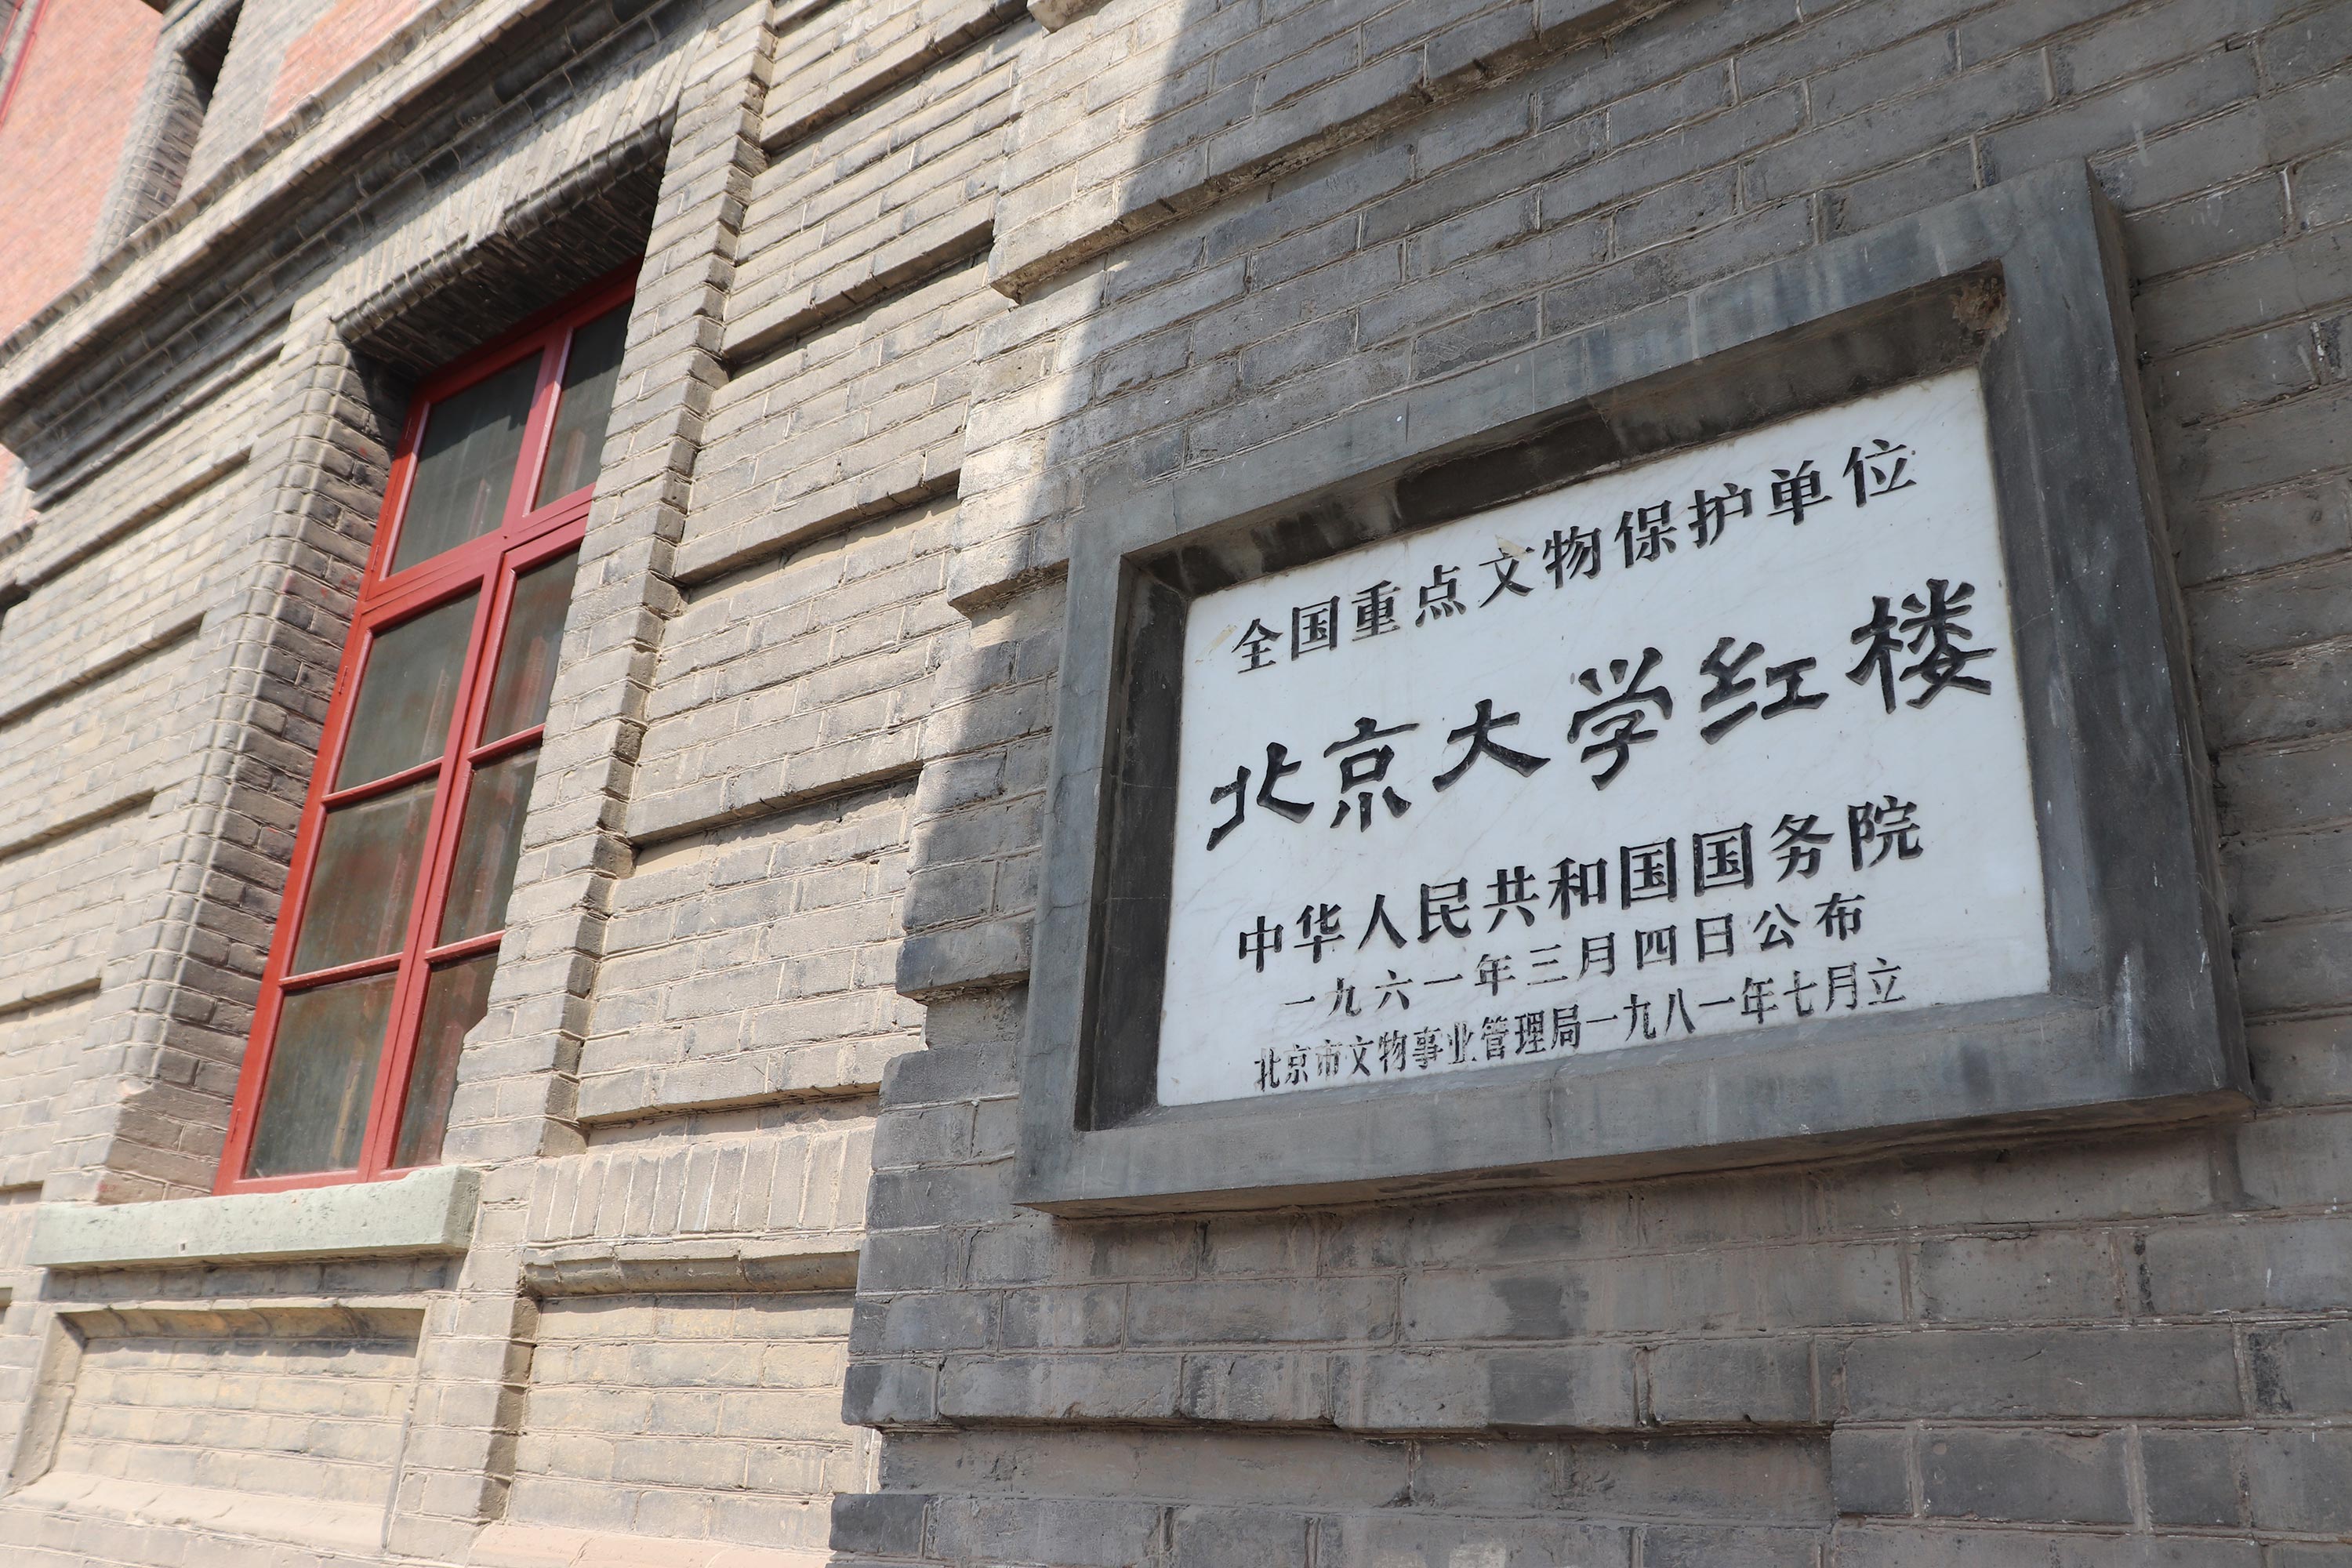 ▲ 坐落于北京五四大街上的北京大学红楼是五四运动的策源地。